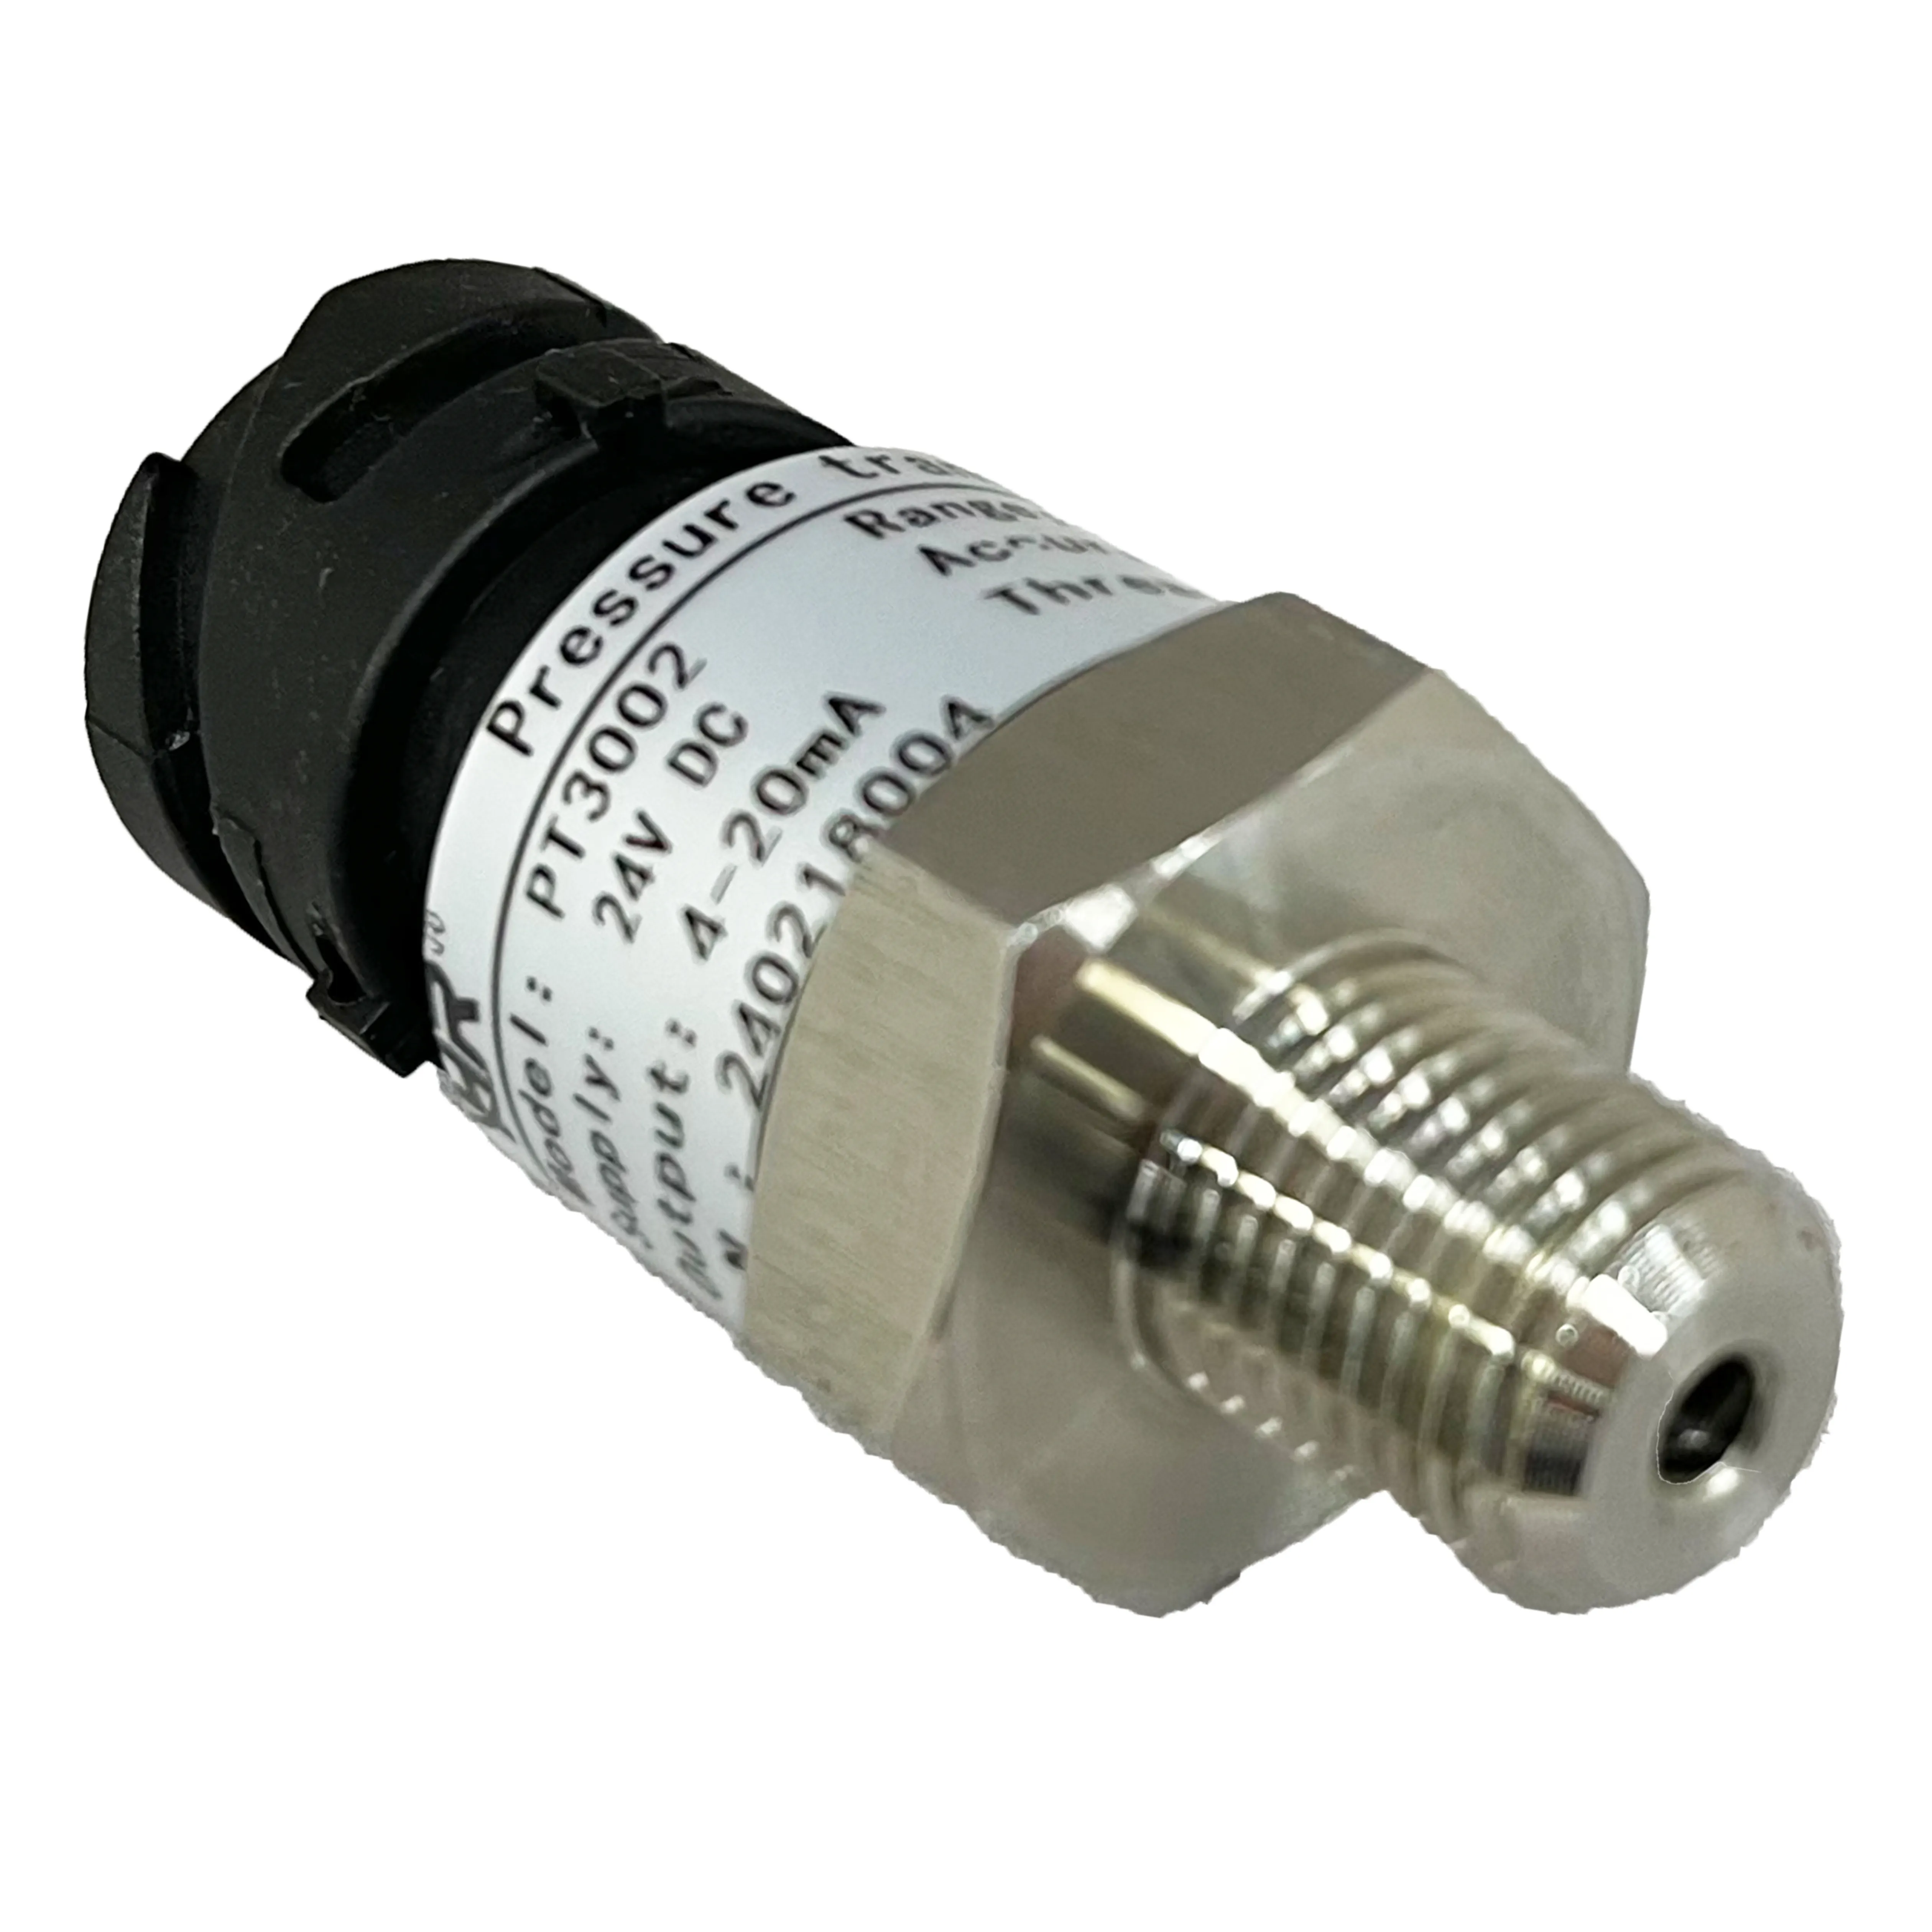 Transmissor de pressão PT3002 Alto desempenho de custo, uma variedade de saída de sinal, ampla variedade de interface elétrica